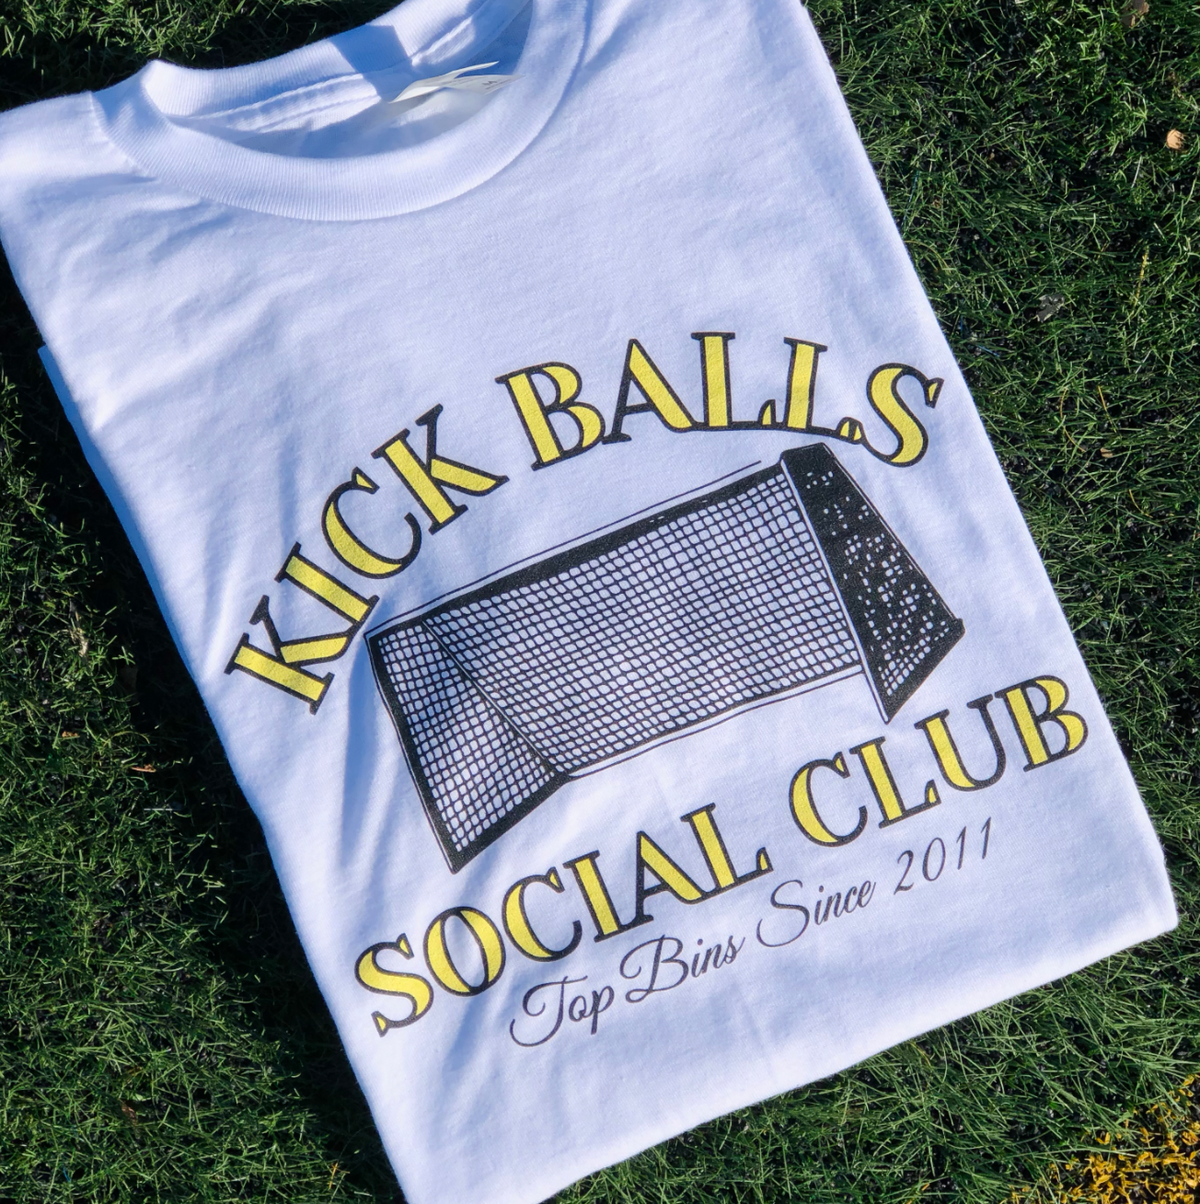 kick balls social club white tshirt by soccergrlprobs